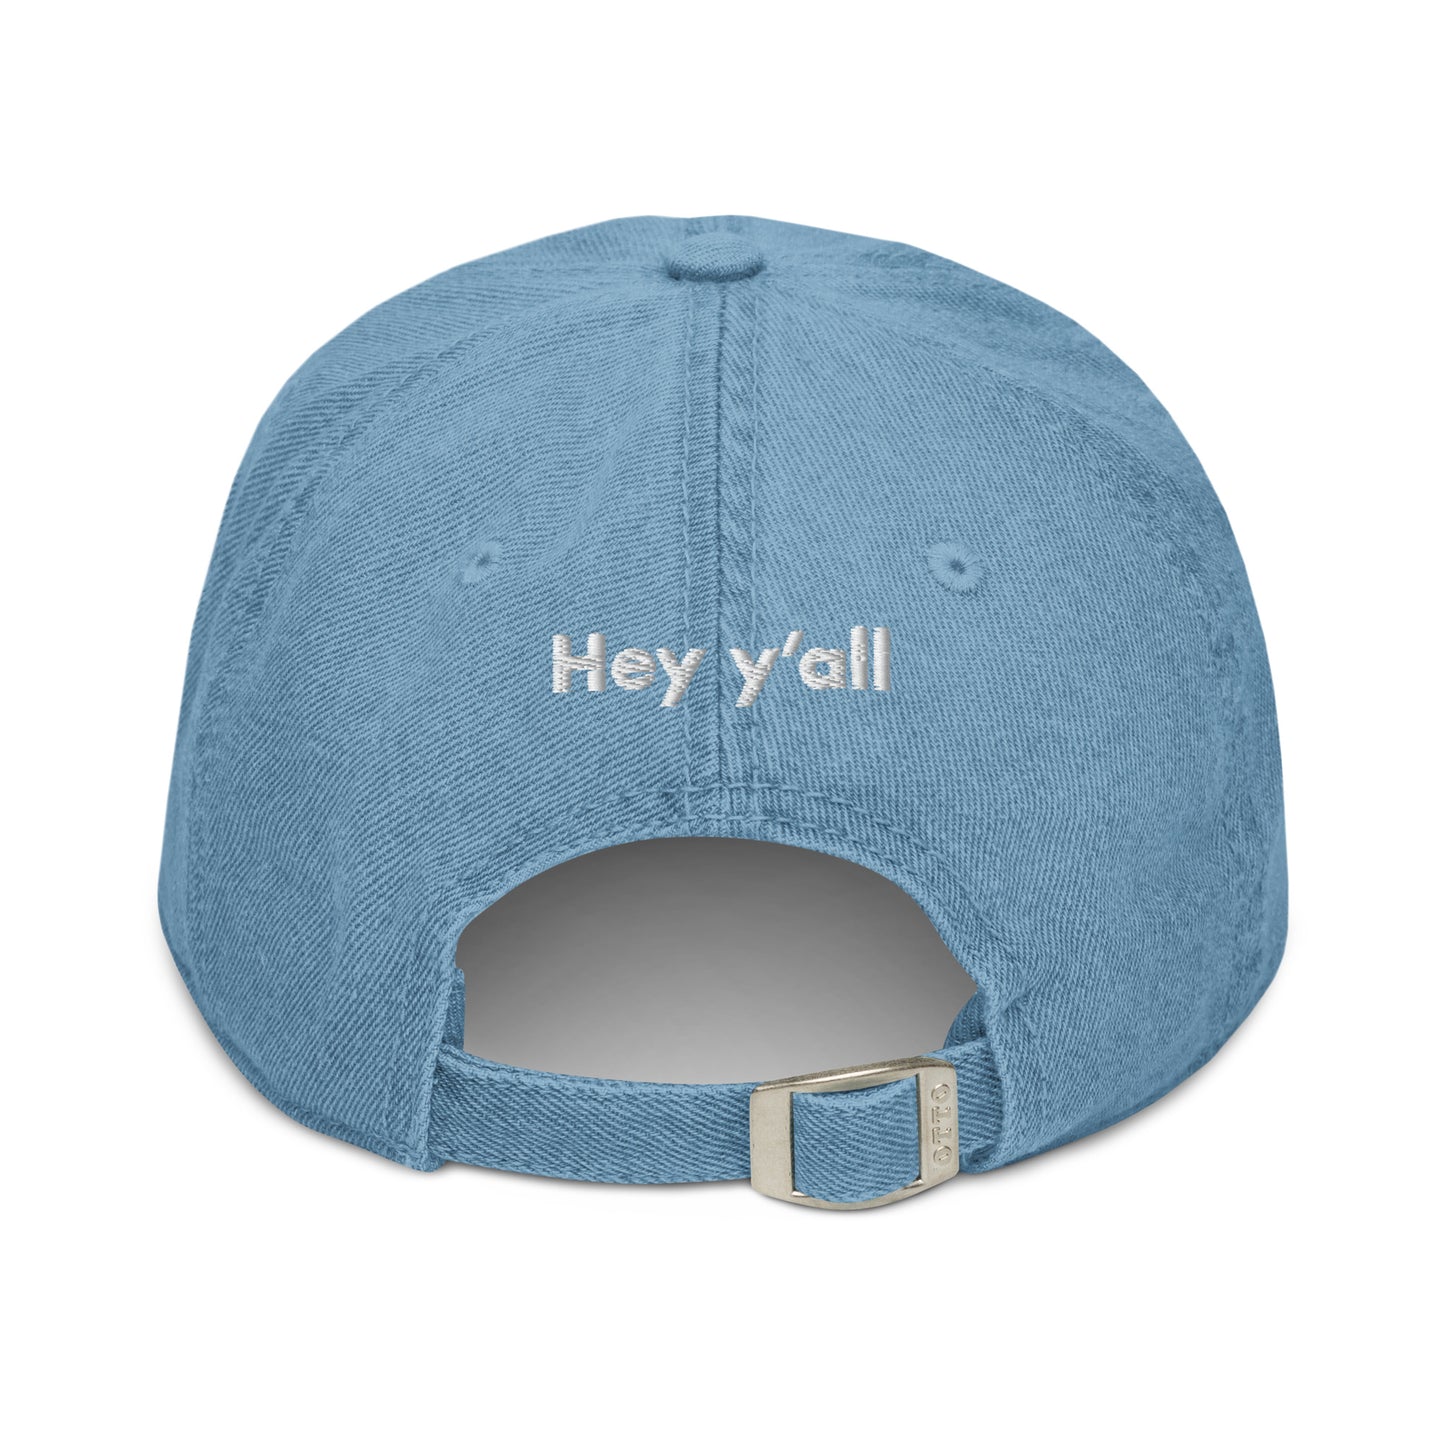 Hi Hey Y'all Denim Hat